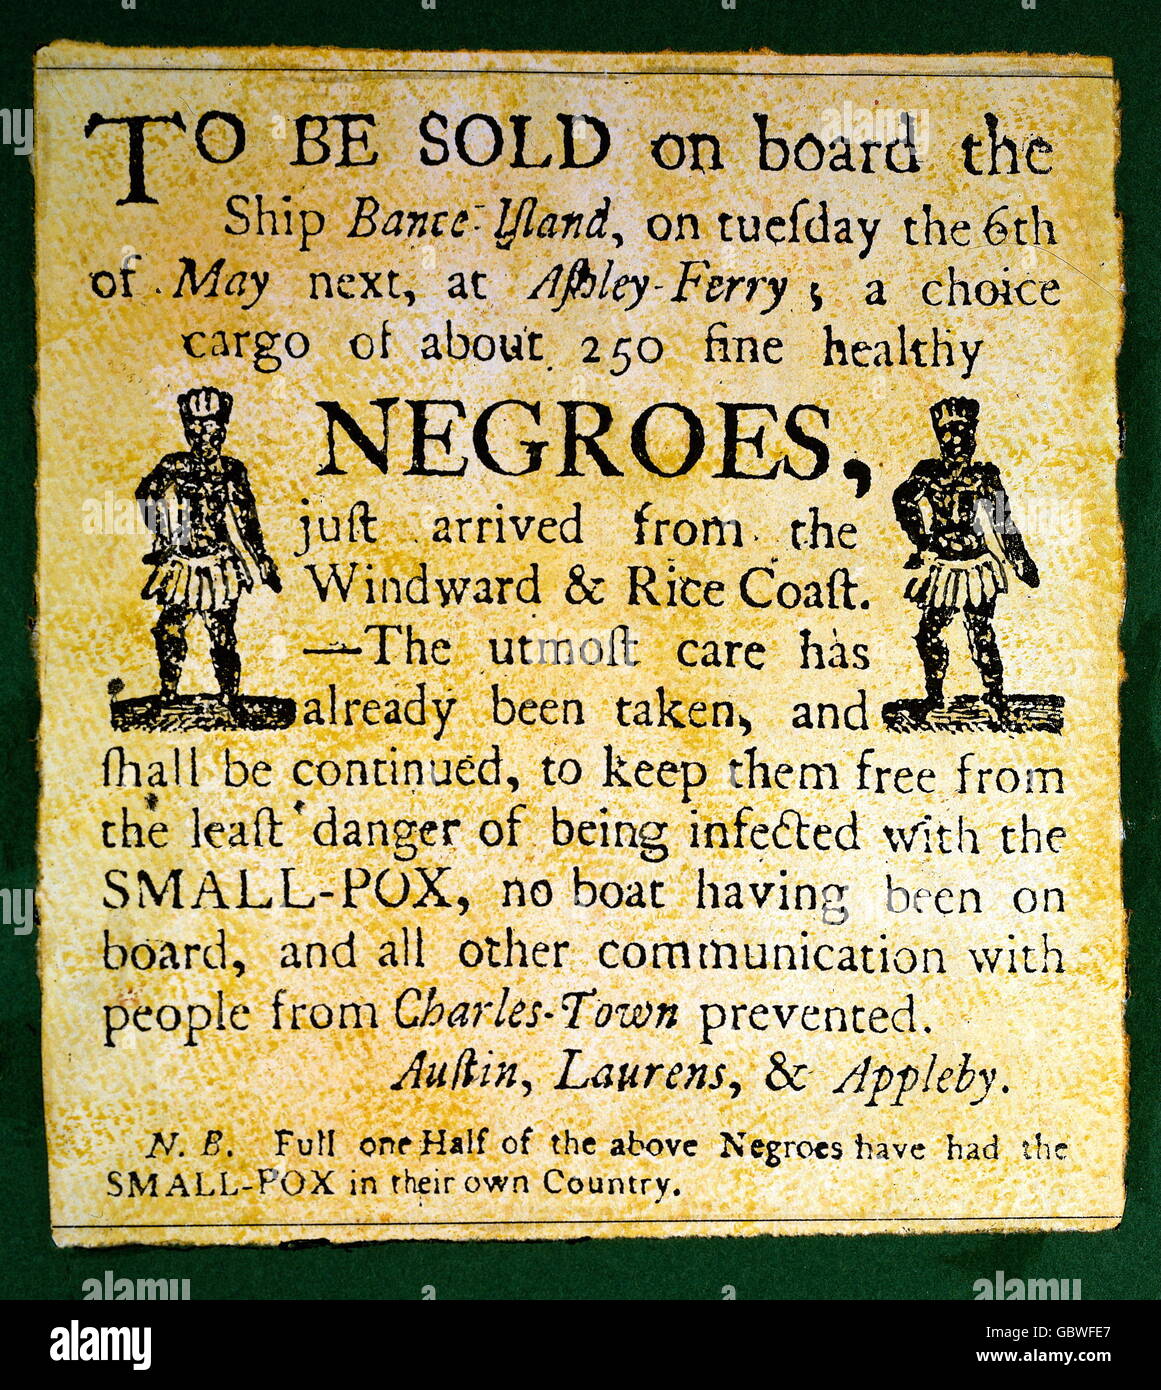 Esclavitud, cartel sobre las ventas de 250 africanos a bordo del barco 'Isla de la lanza' en el puerto de Charlestown, EE.UU., principios del siglo 19, Derechos adicionales-Clearences-no disponible Foto de stock